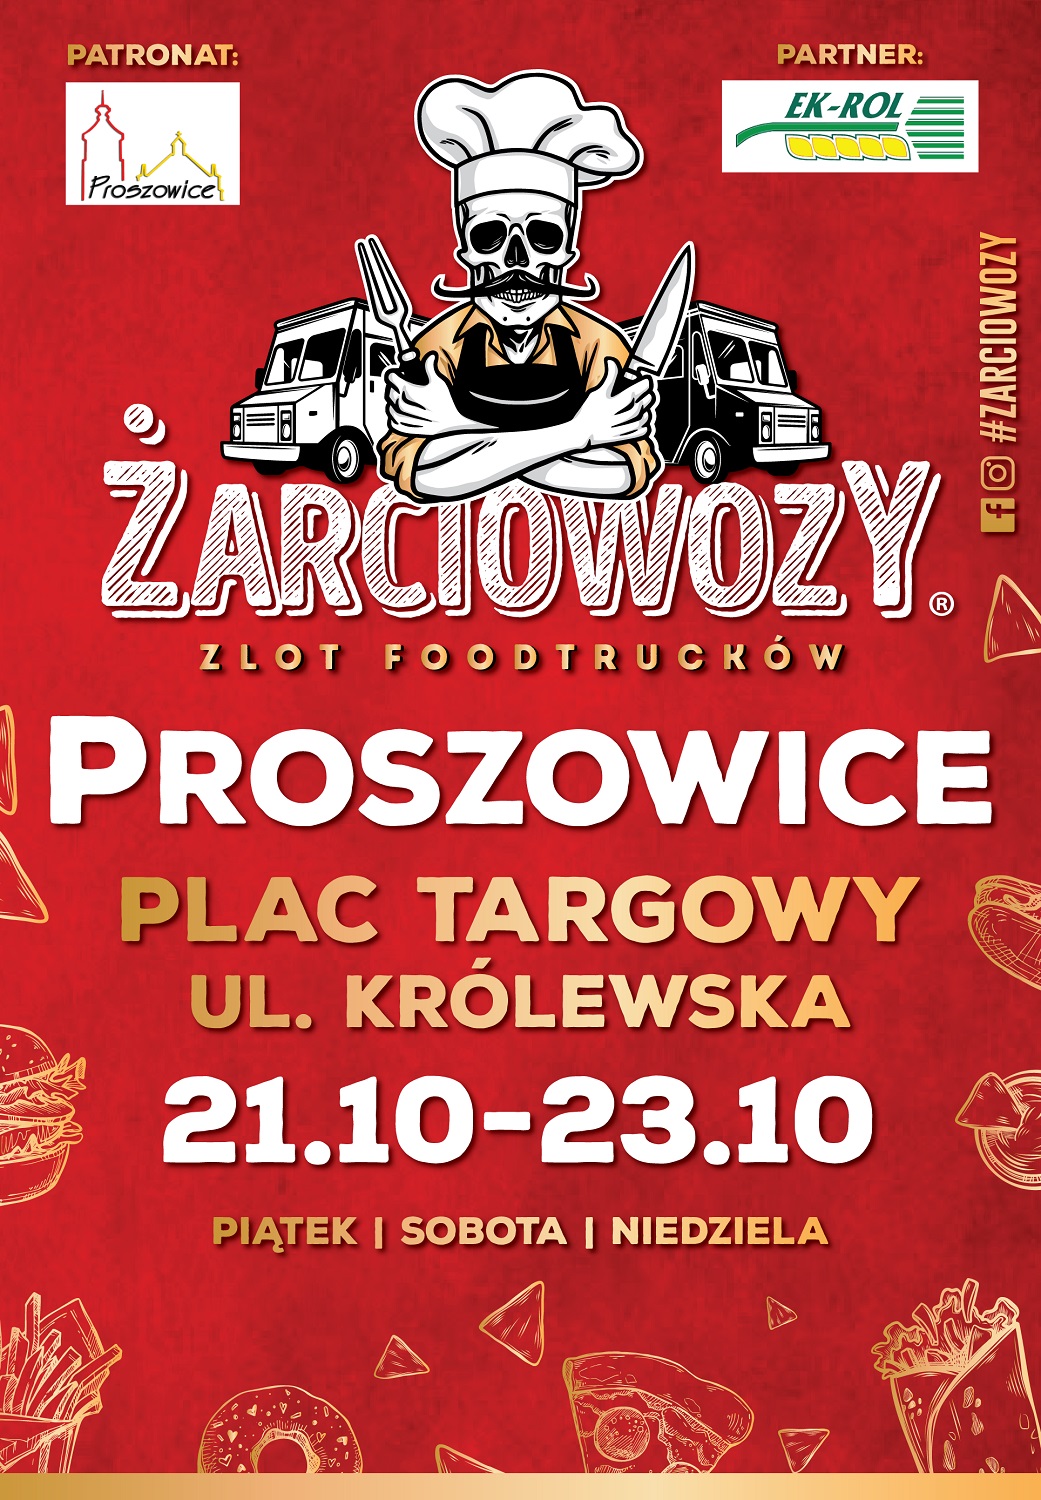 Plakat promujący zlot foodtrucków w Proszowicach.